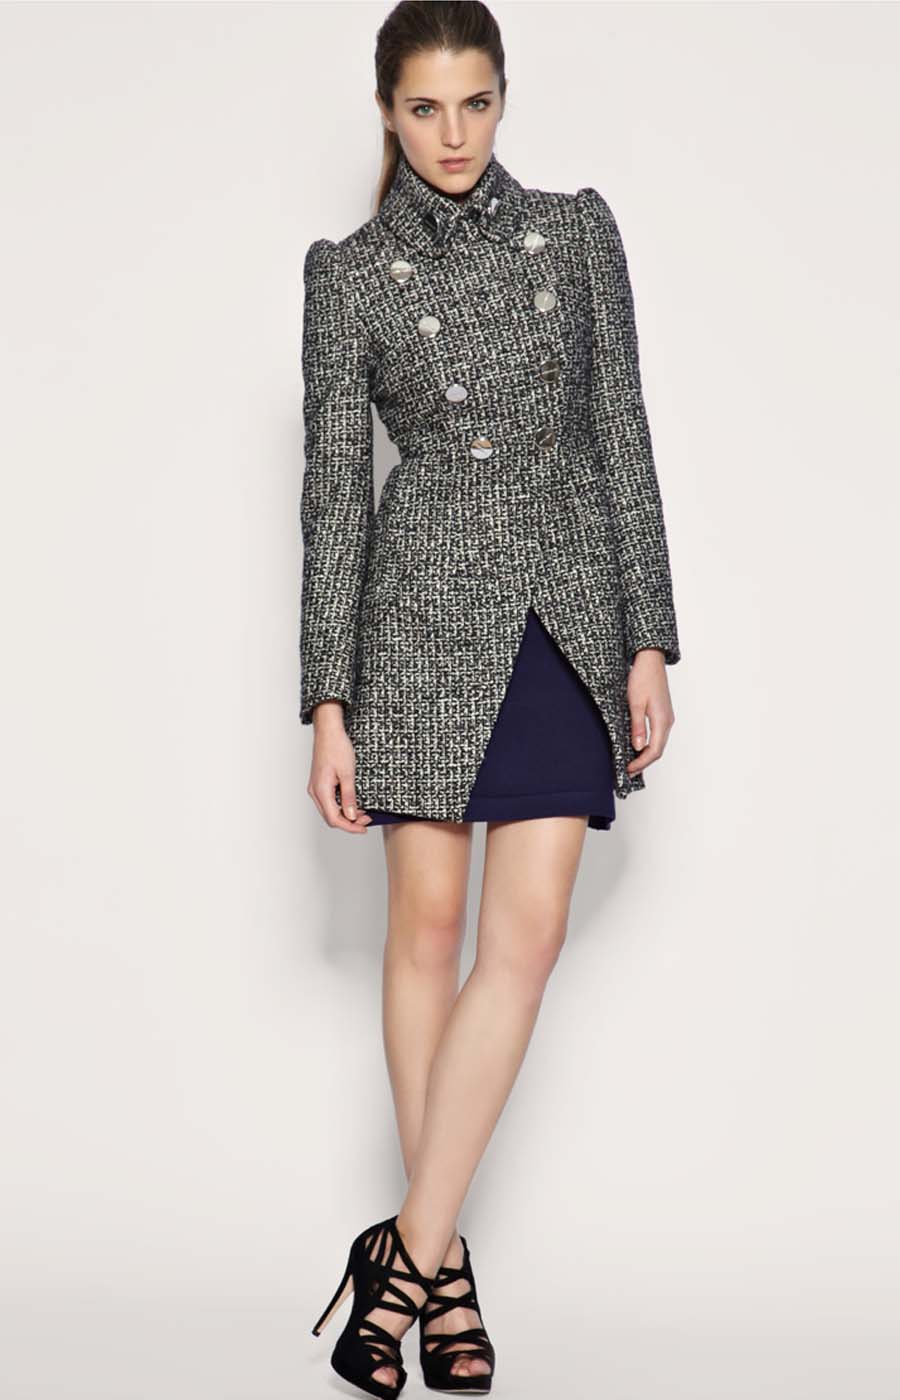 Fashion Trends: To own one Discount Karen millen dress